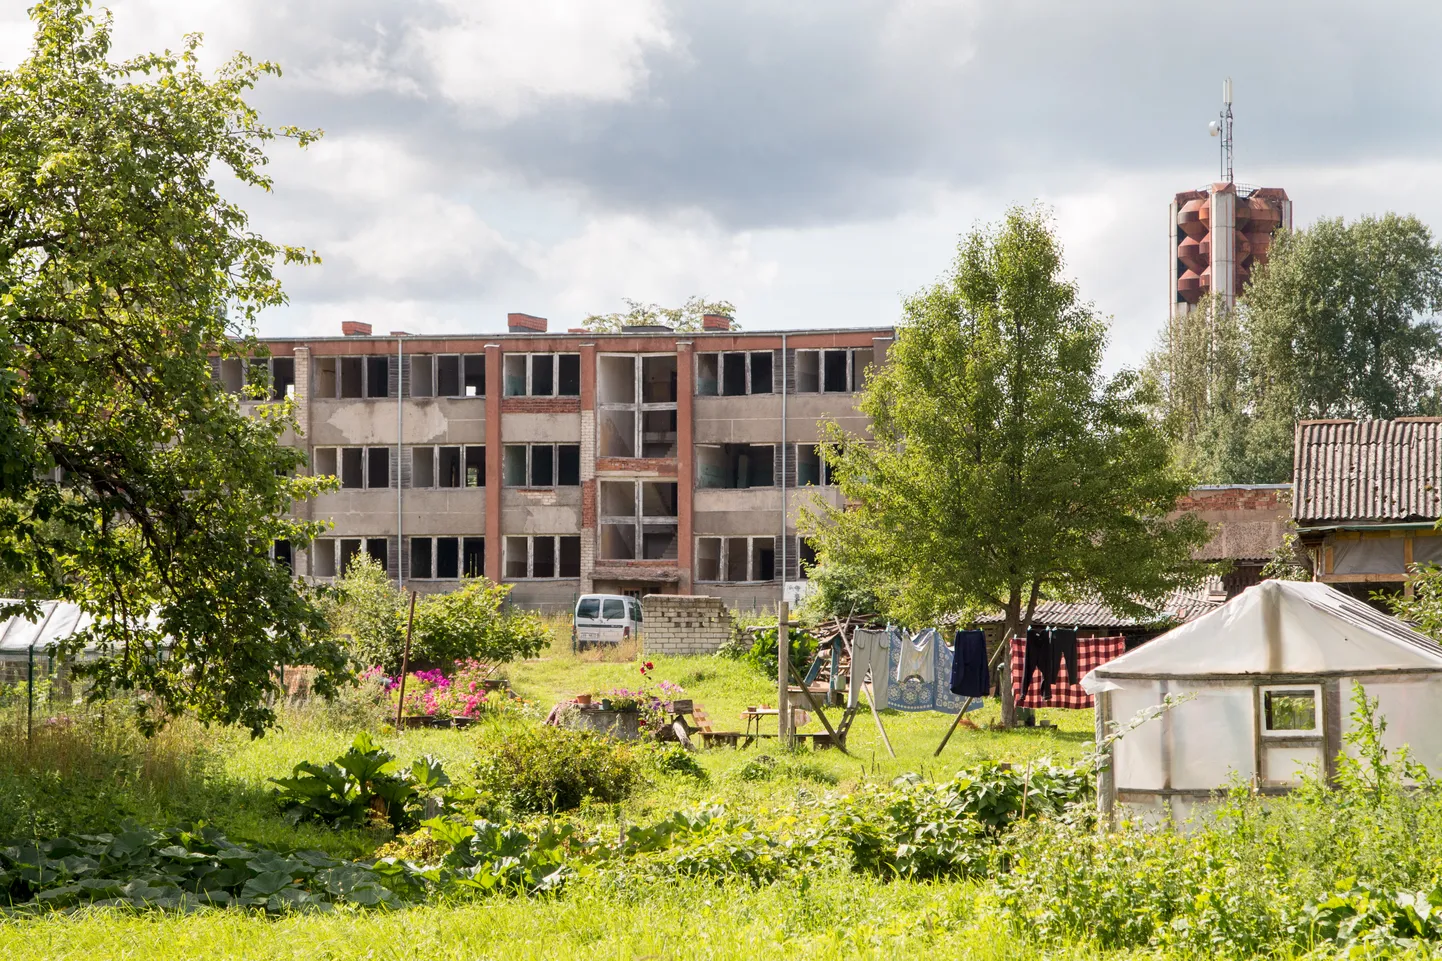 Läti, Valka tühjad korterelamud äärelinnas.
Tühjana, kasutuskõlbmatu kinnisvara, korterid, eluruumid, tondilossid